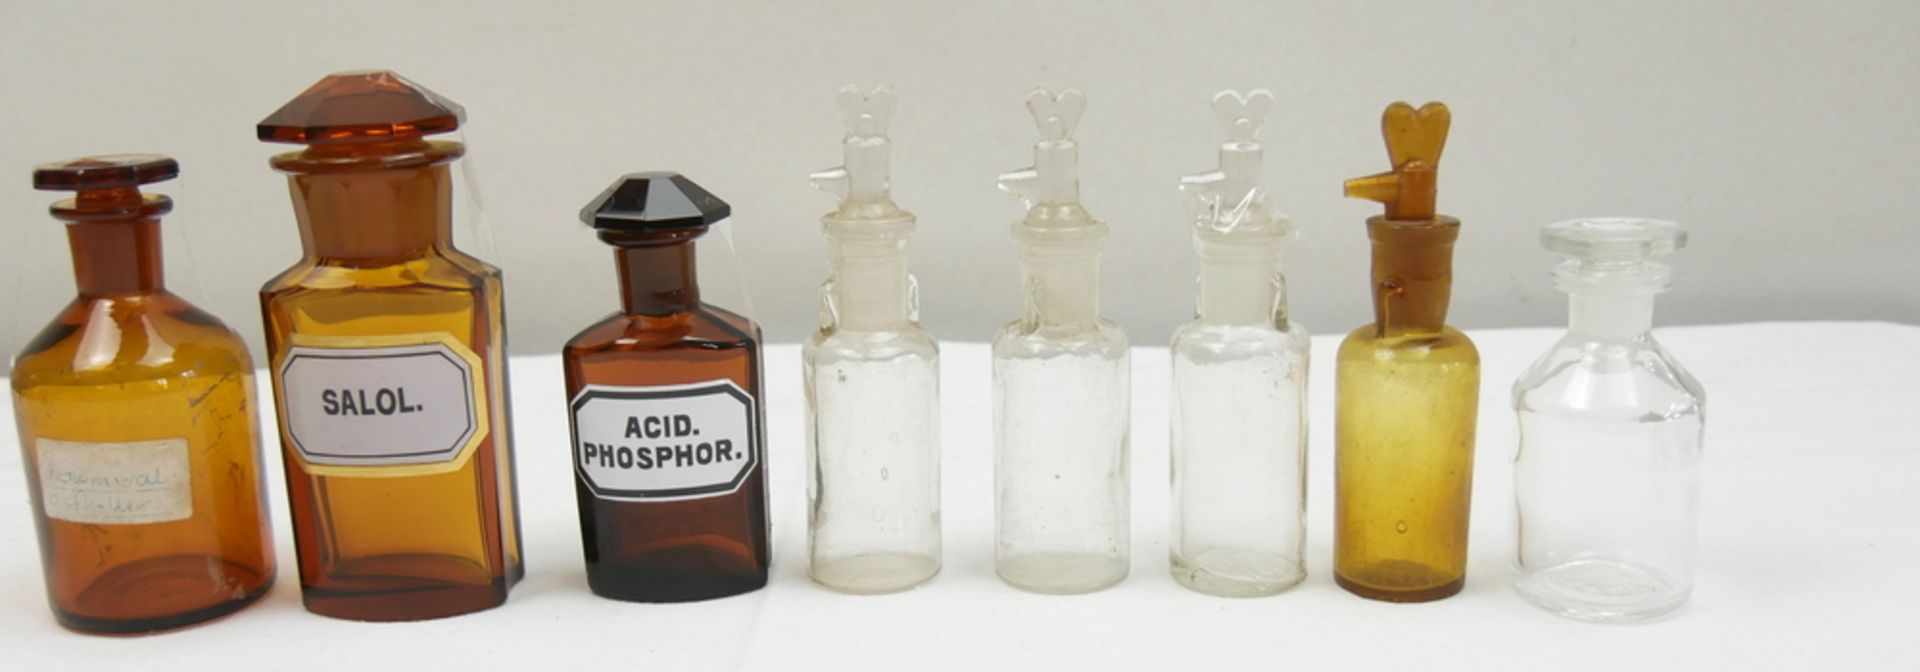 Konvolut alte Arznei- und Tropffläschchen / Abschliff Flaschen, zum Teil um 1900 in gutem Zustand.